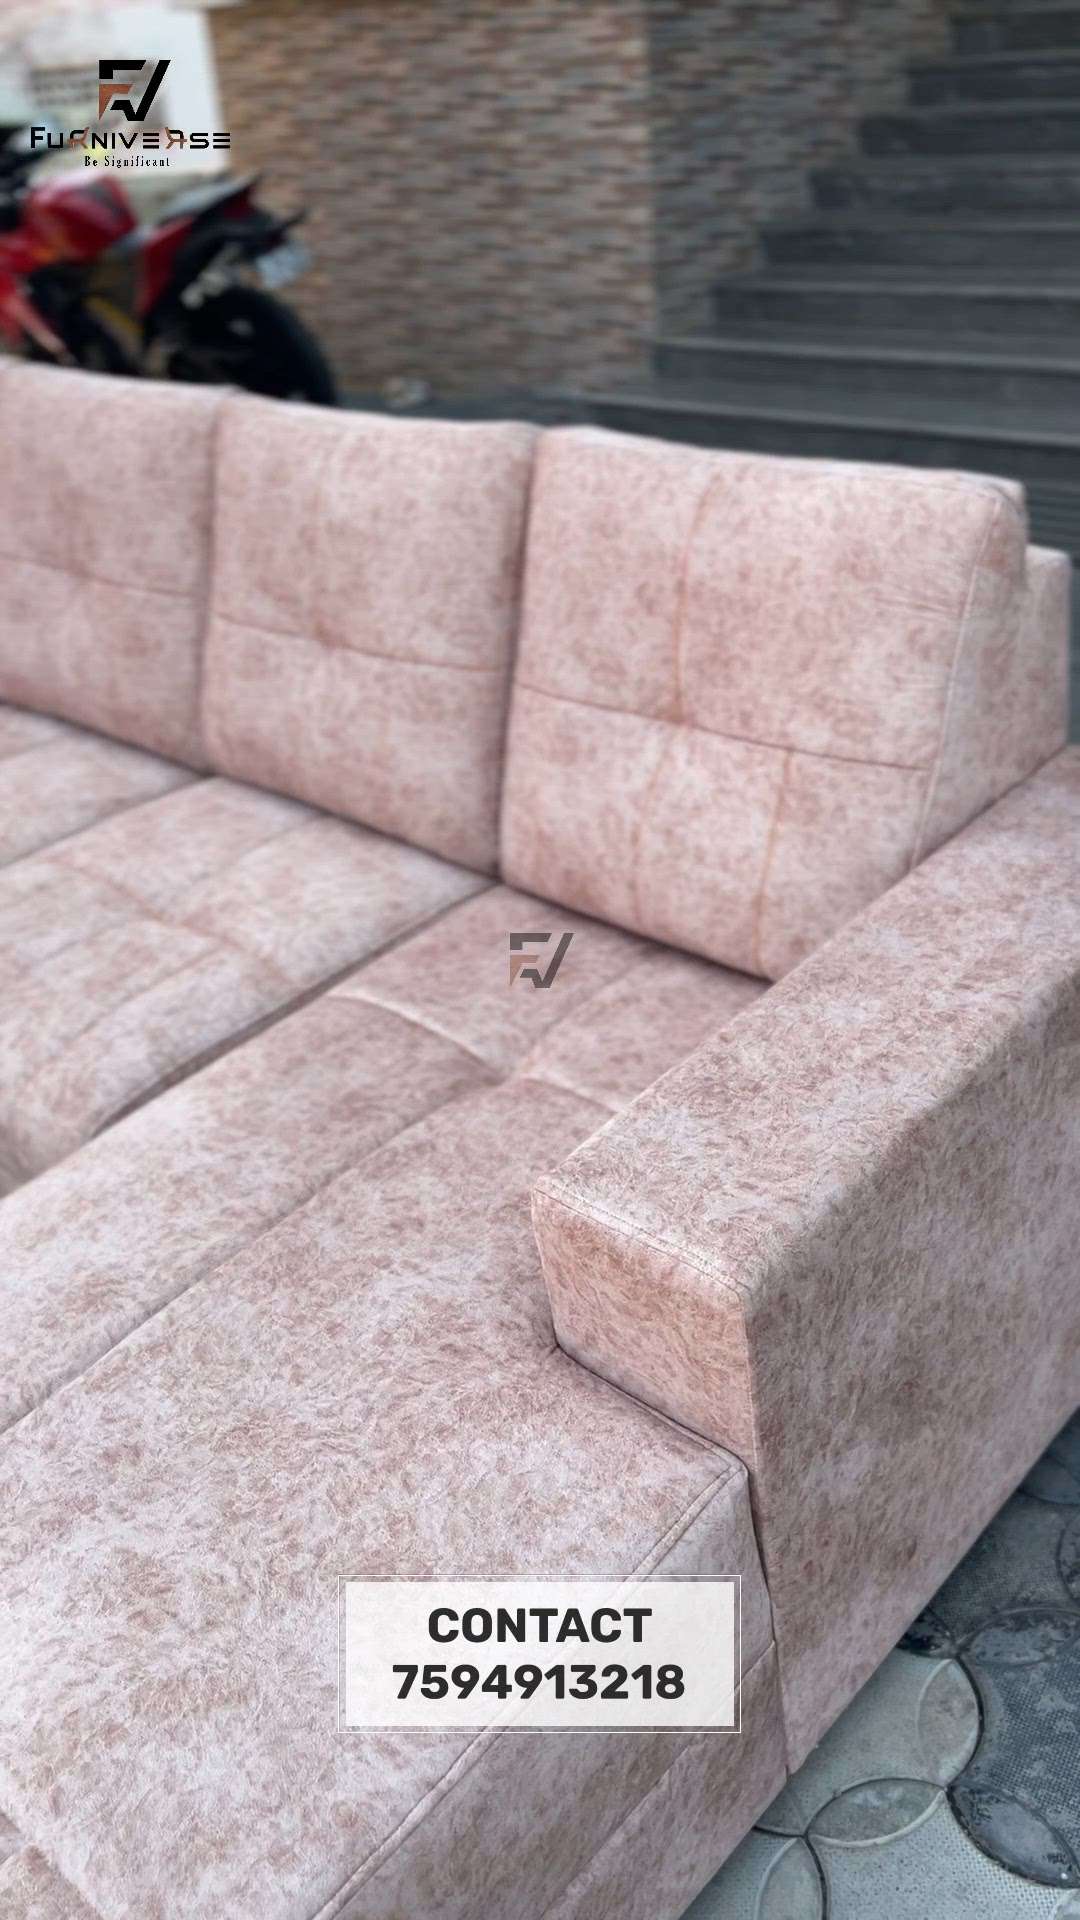 3 Seater + Divan Style Sofa 👍   
Contact : 7594913218
.
.
.
?
?#furniture #furnituredesign #sofamaking #furniversepalakkad  #furniverse  #Sofas  #LivingRoomSofa